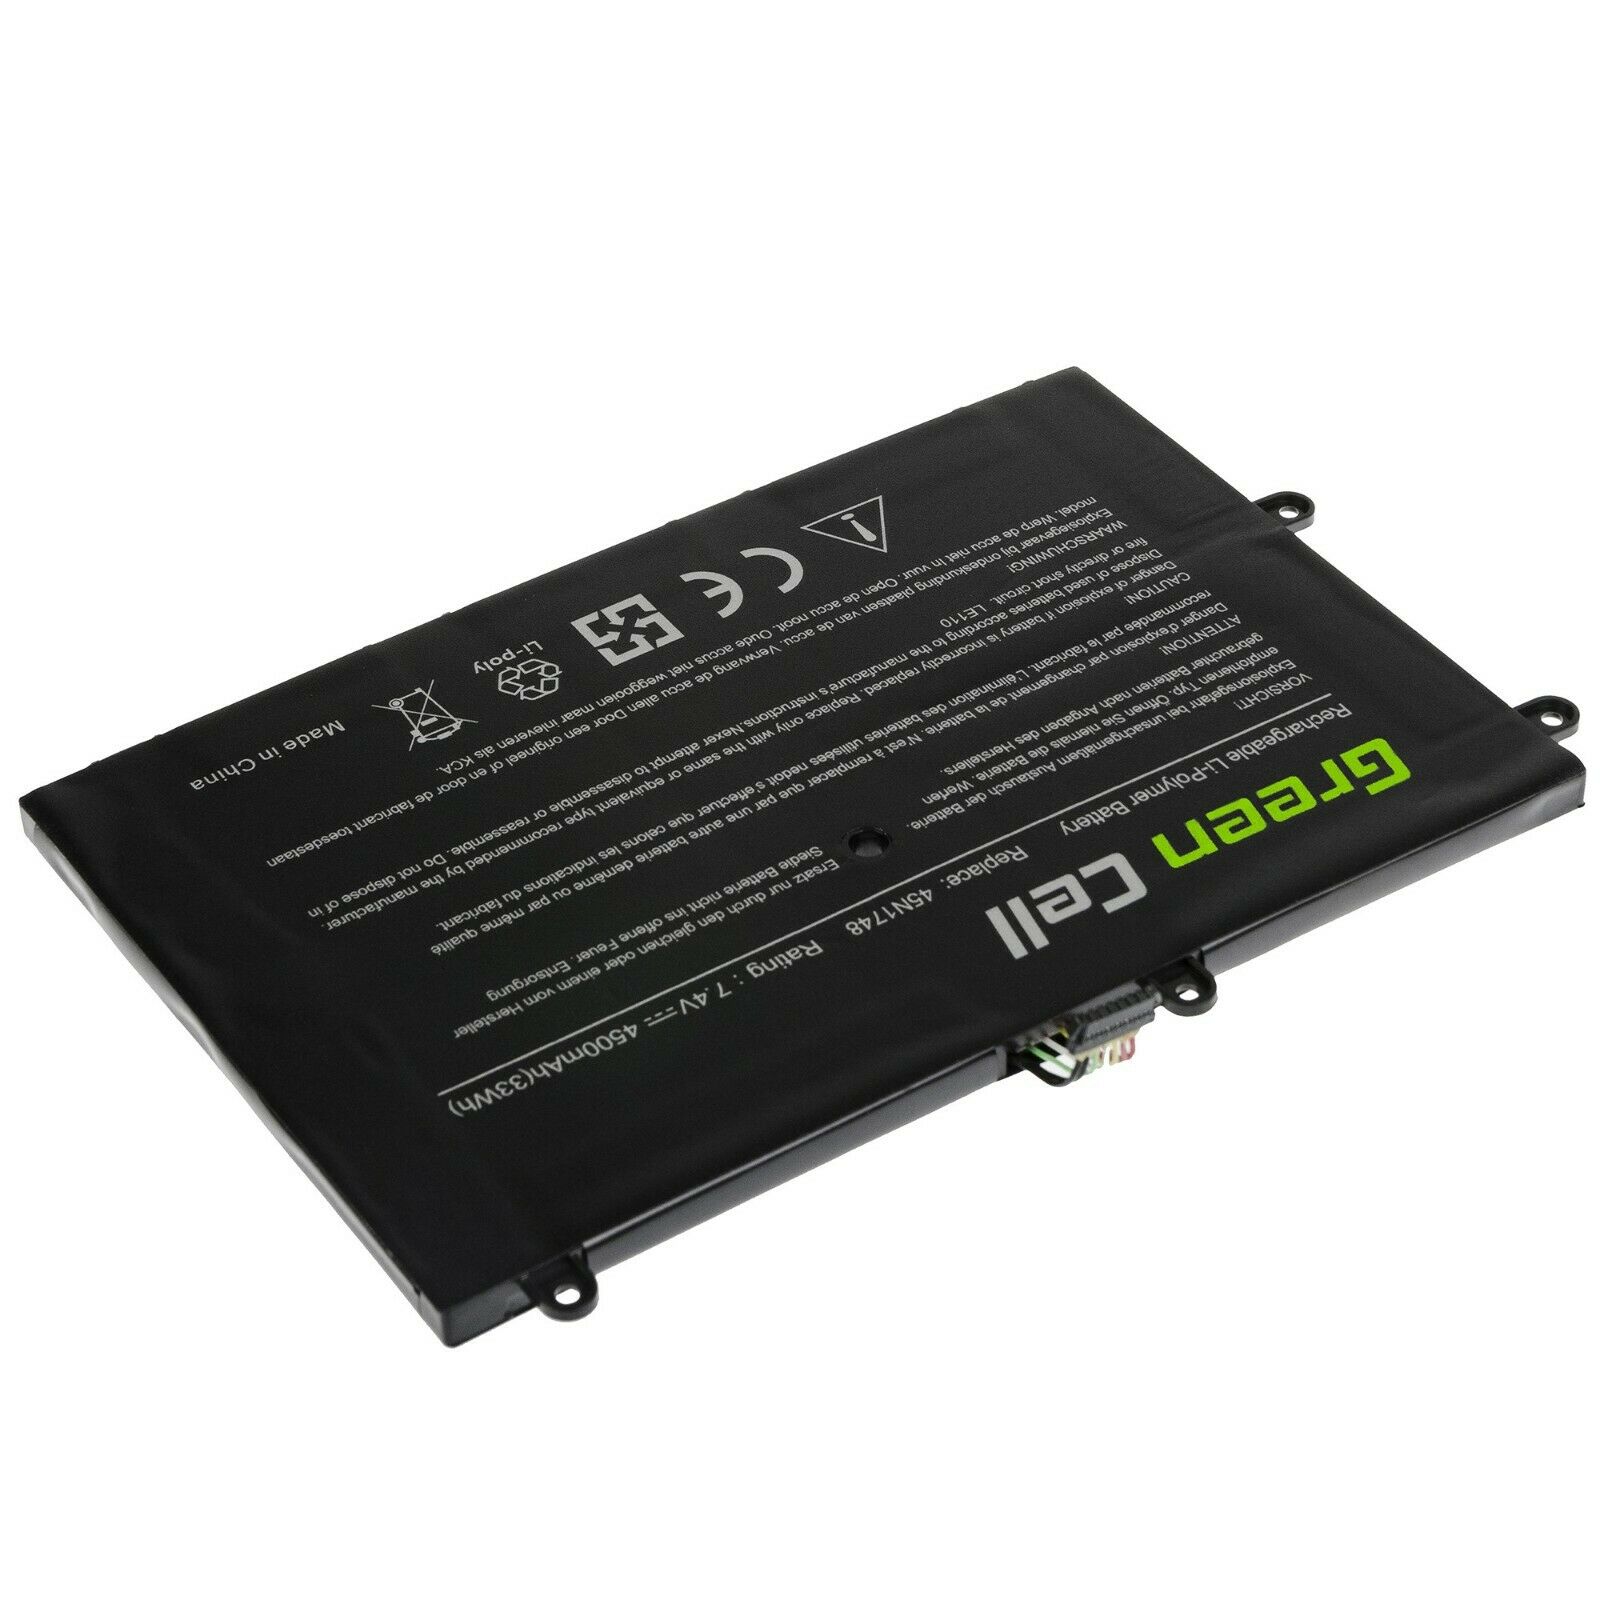 μπαταρία για Lenovo 11e (20G9/20GB),Yoga 11e Chromebook Series,45N1748,45N1749 συμβιβάσιμος